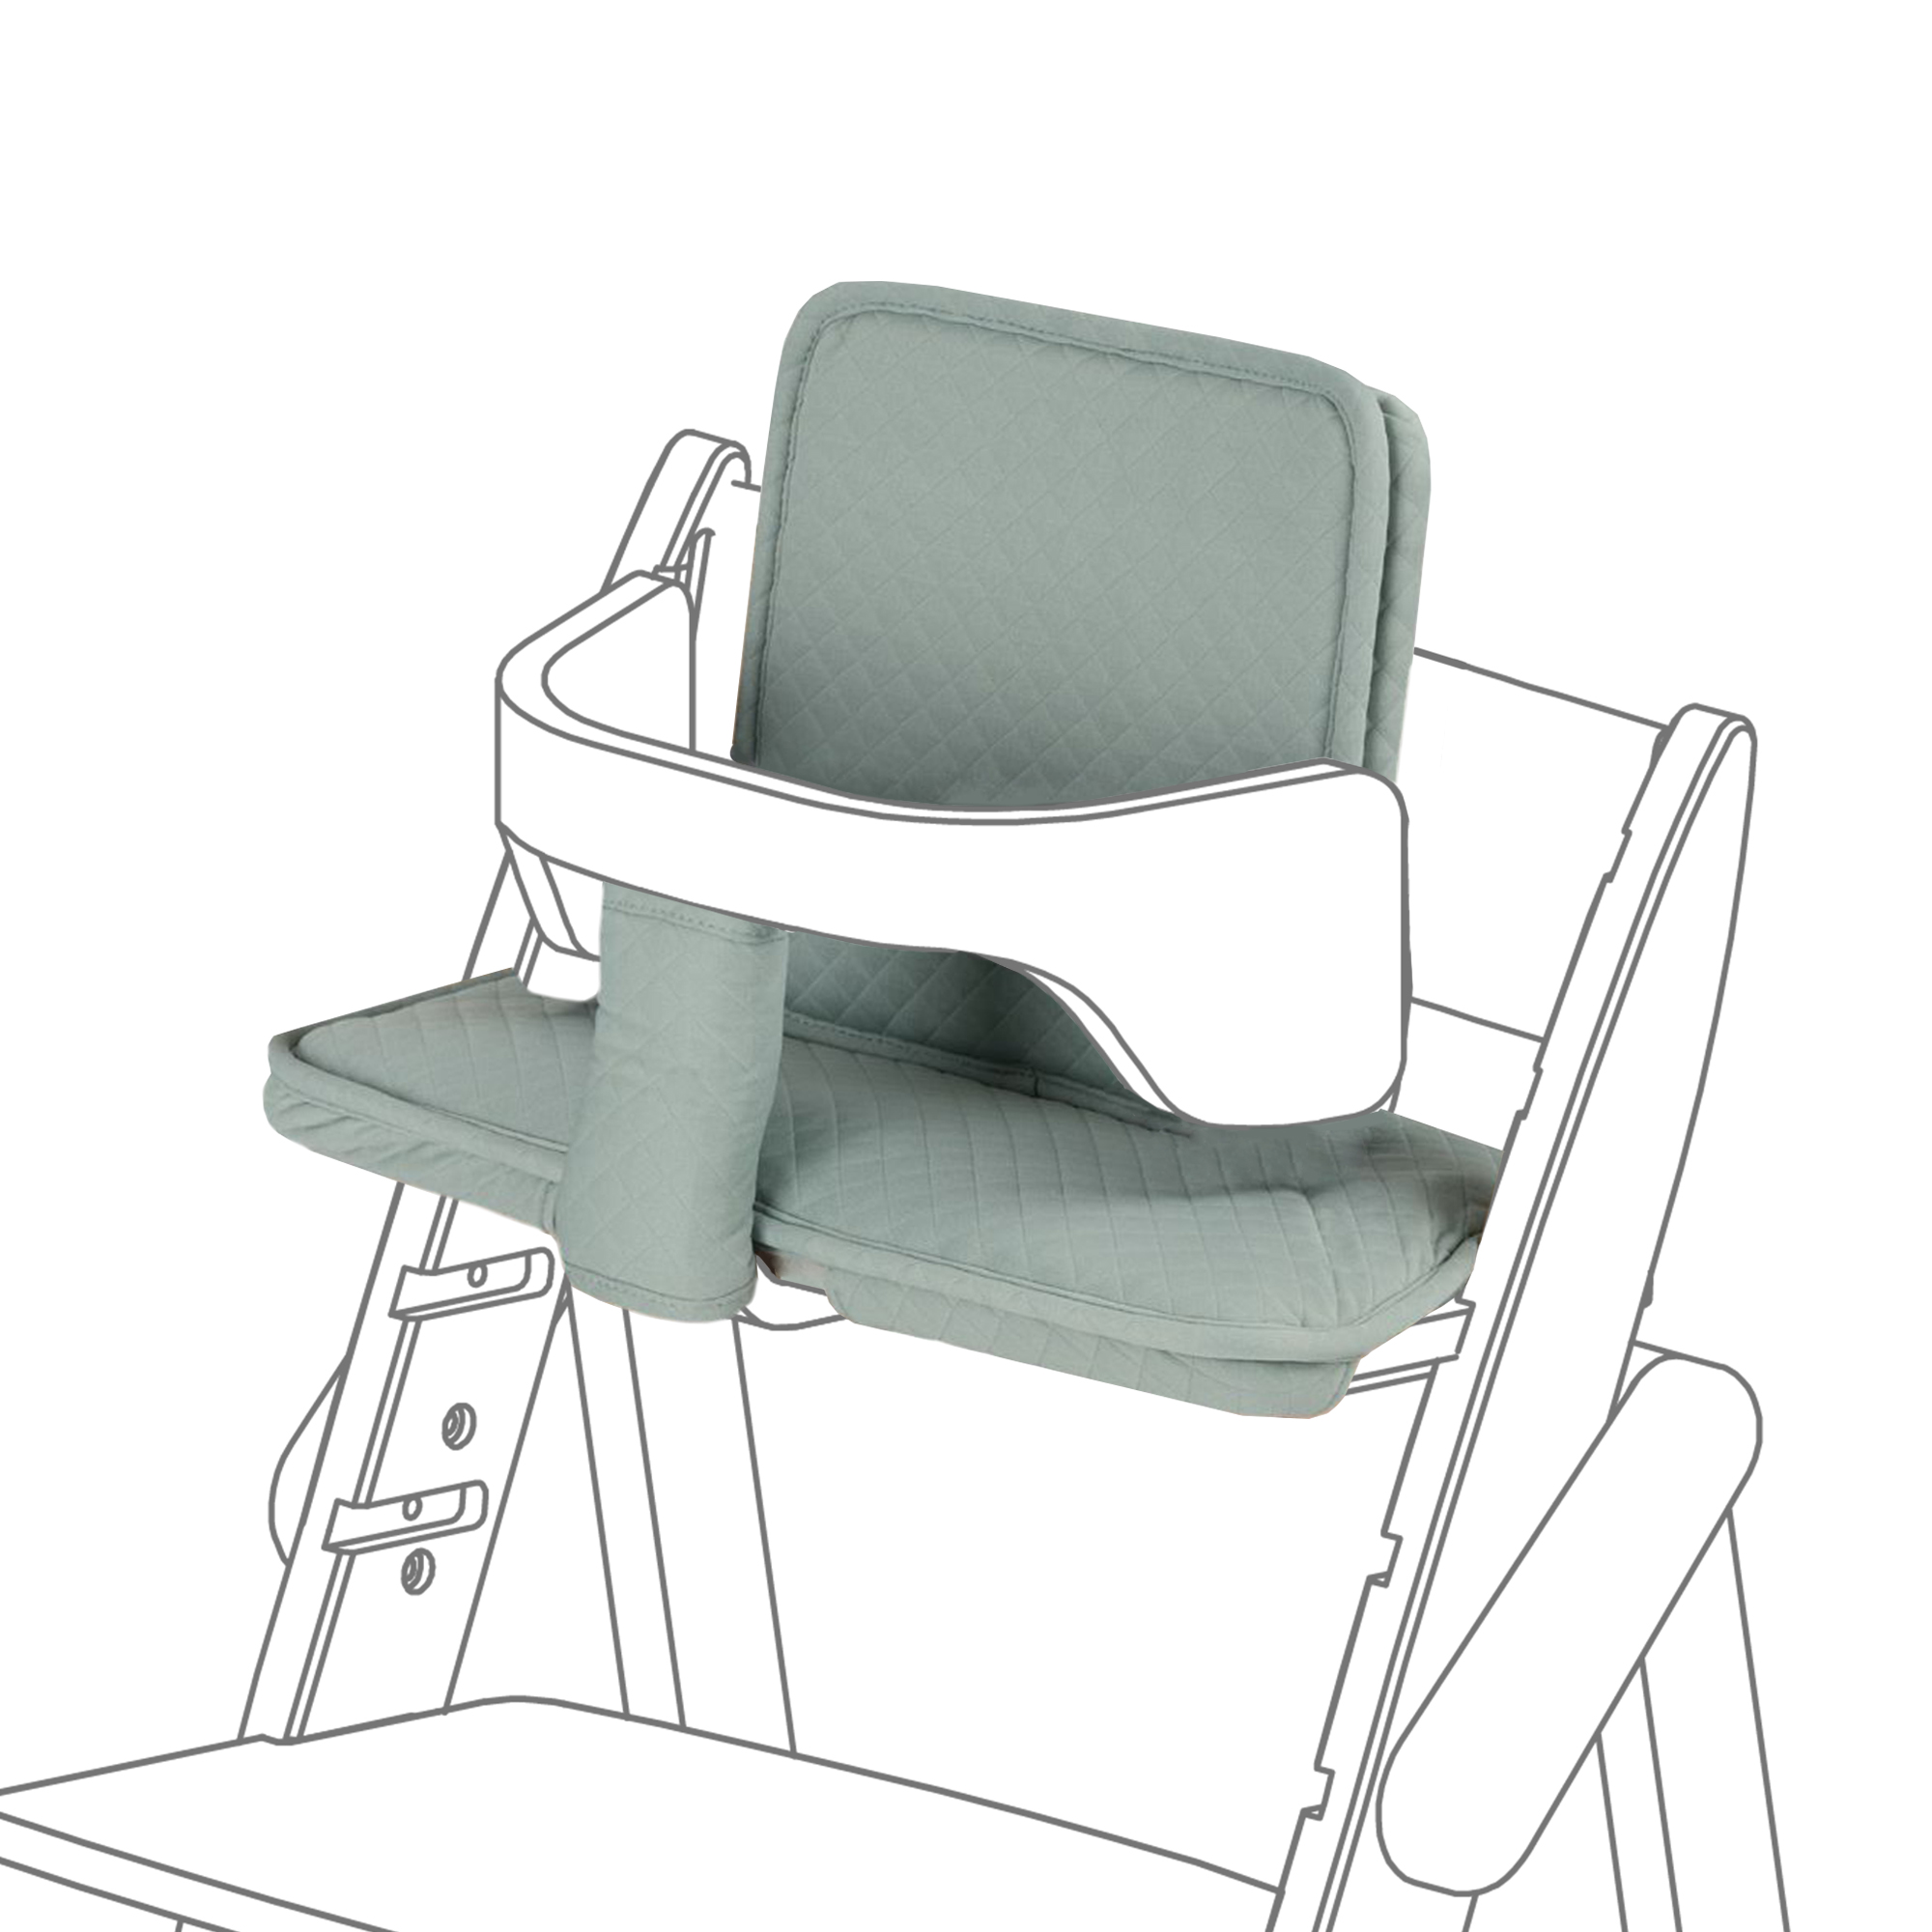 Набор подушек Moji Cushion Set для стульчика Yippy mint 12003342213 набор подушек moji cushion set для стульчика yippy mint 12003342213